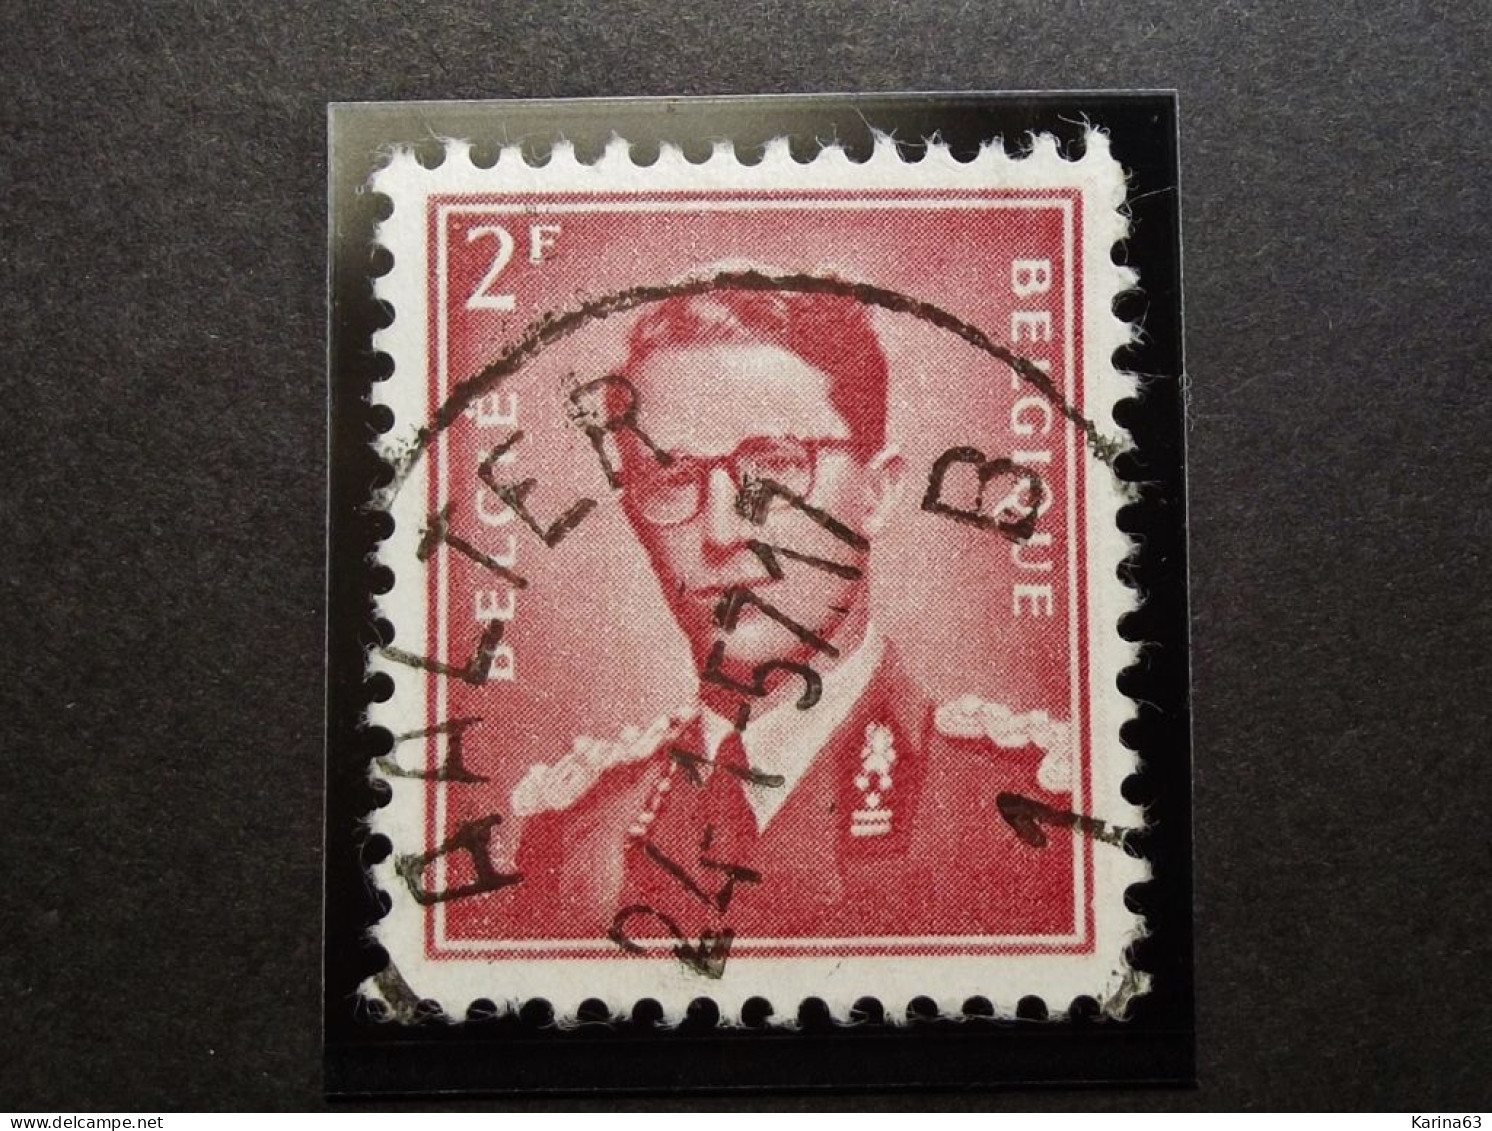 Belgie Belgique - 1953 -  OPB/COB  N° 925 - 2 F  - Obl.  - AALTER - 1957 - Used Stamps